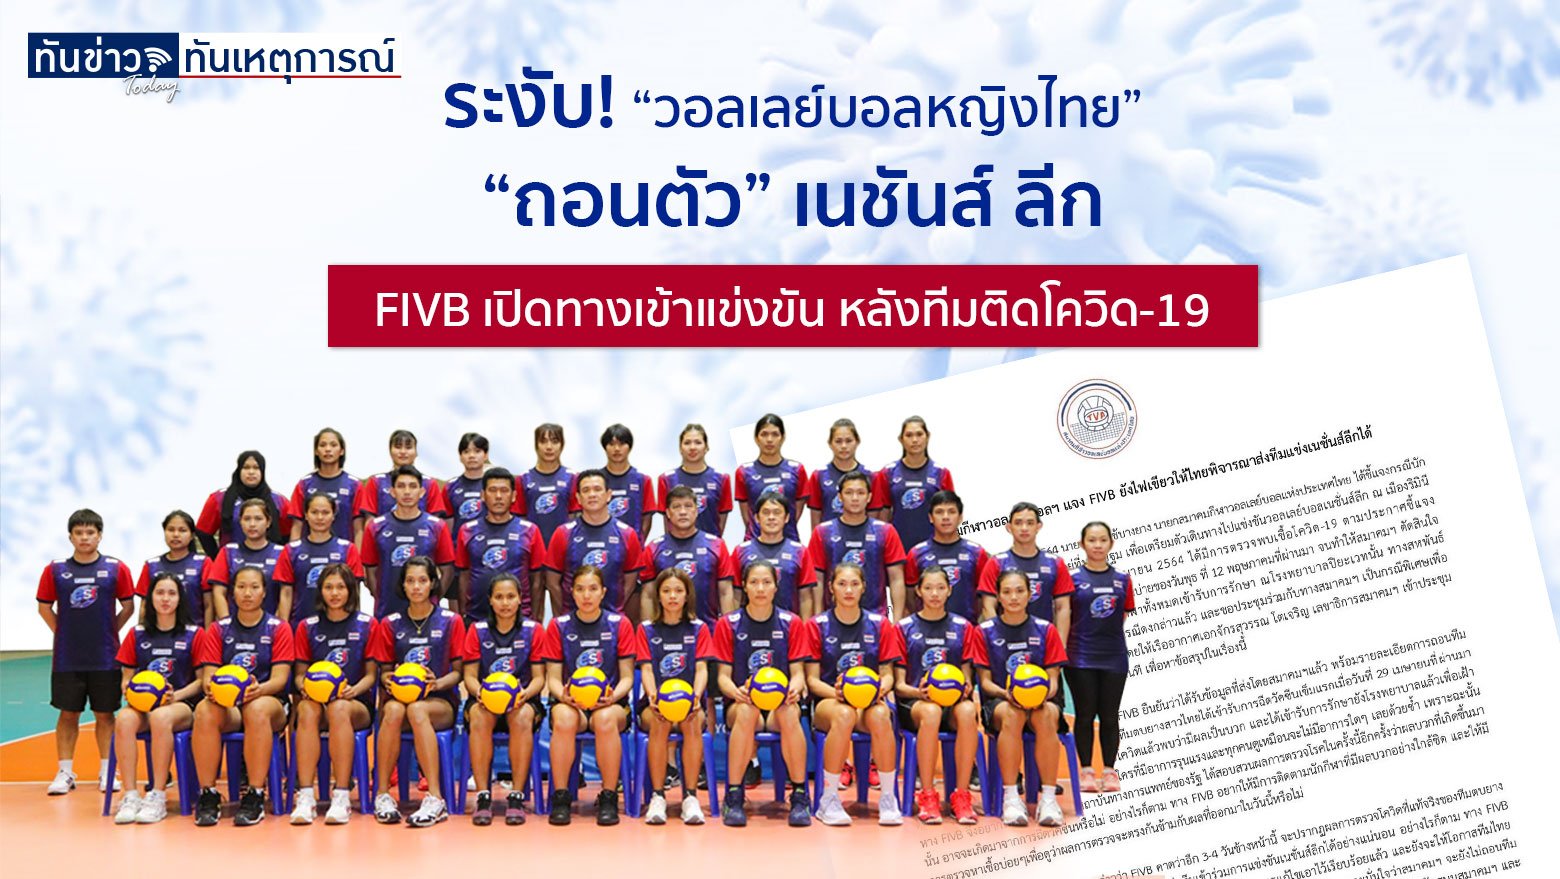 ระงับ! “วอลเลย์บอลหญิงไทย” ถอนตัว “เนชันส์ ลีก”   FIVB เปิดทางเข้าแข่งขัน หลังทีมติดโควิด-19